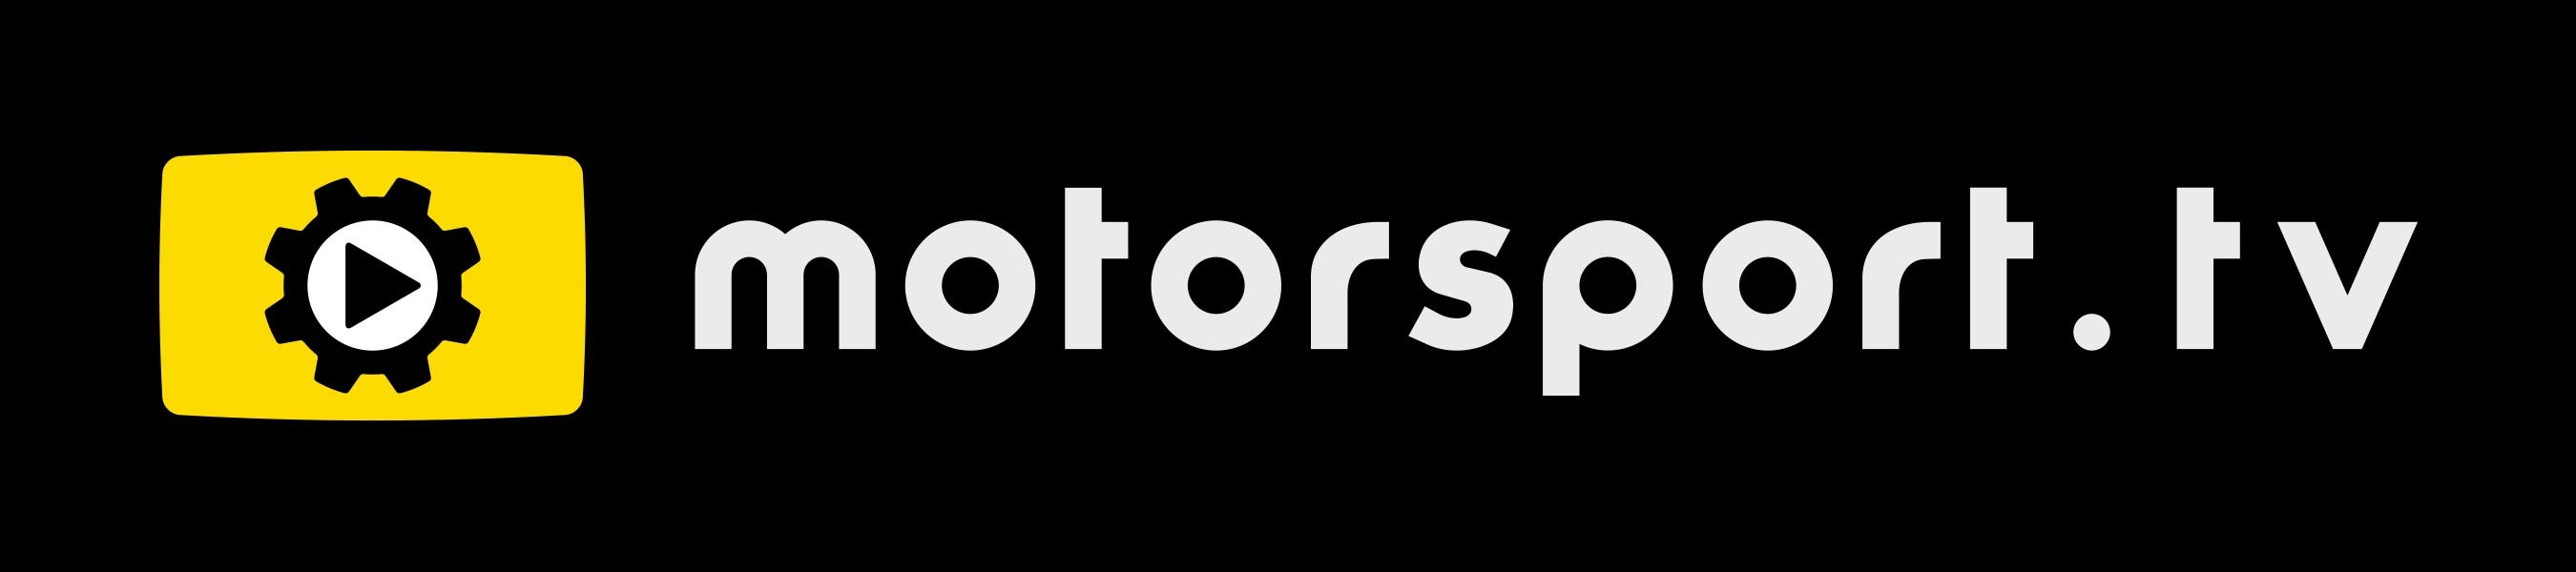 motorsport tv